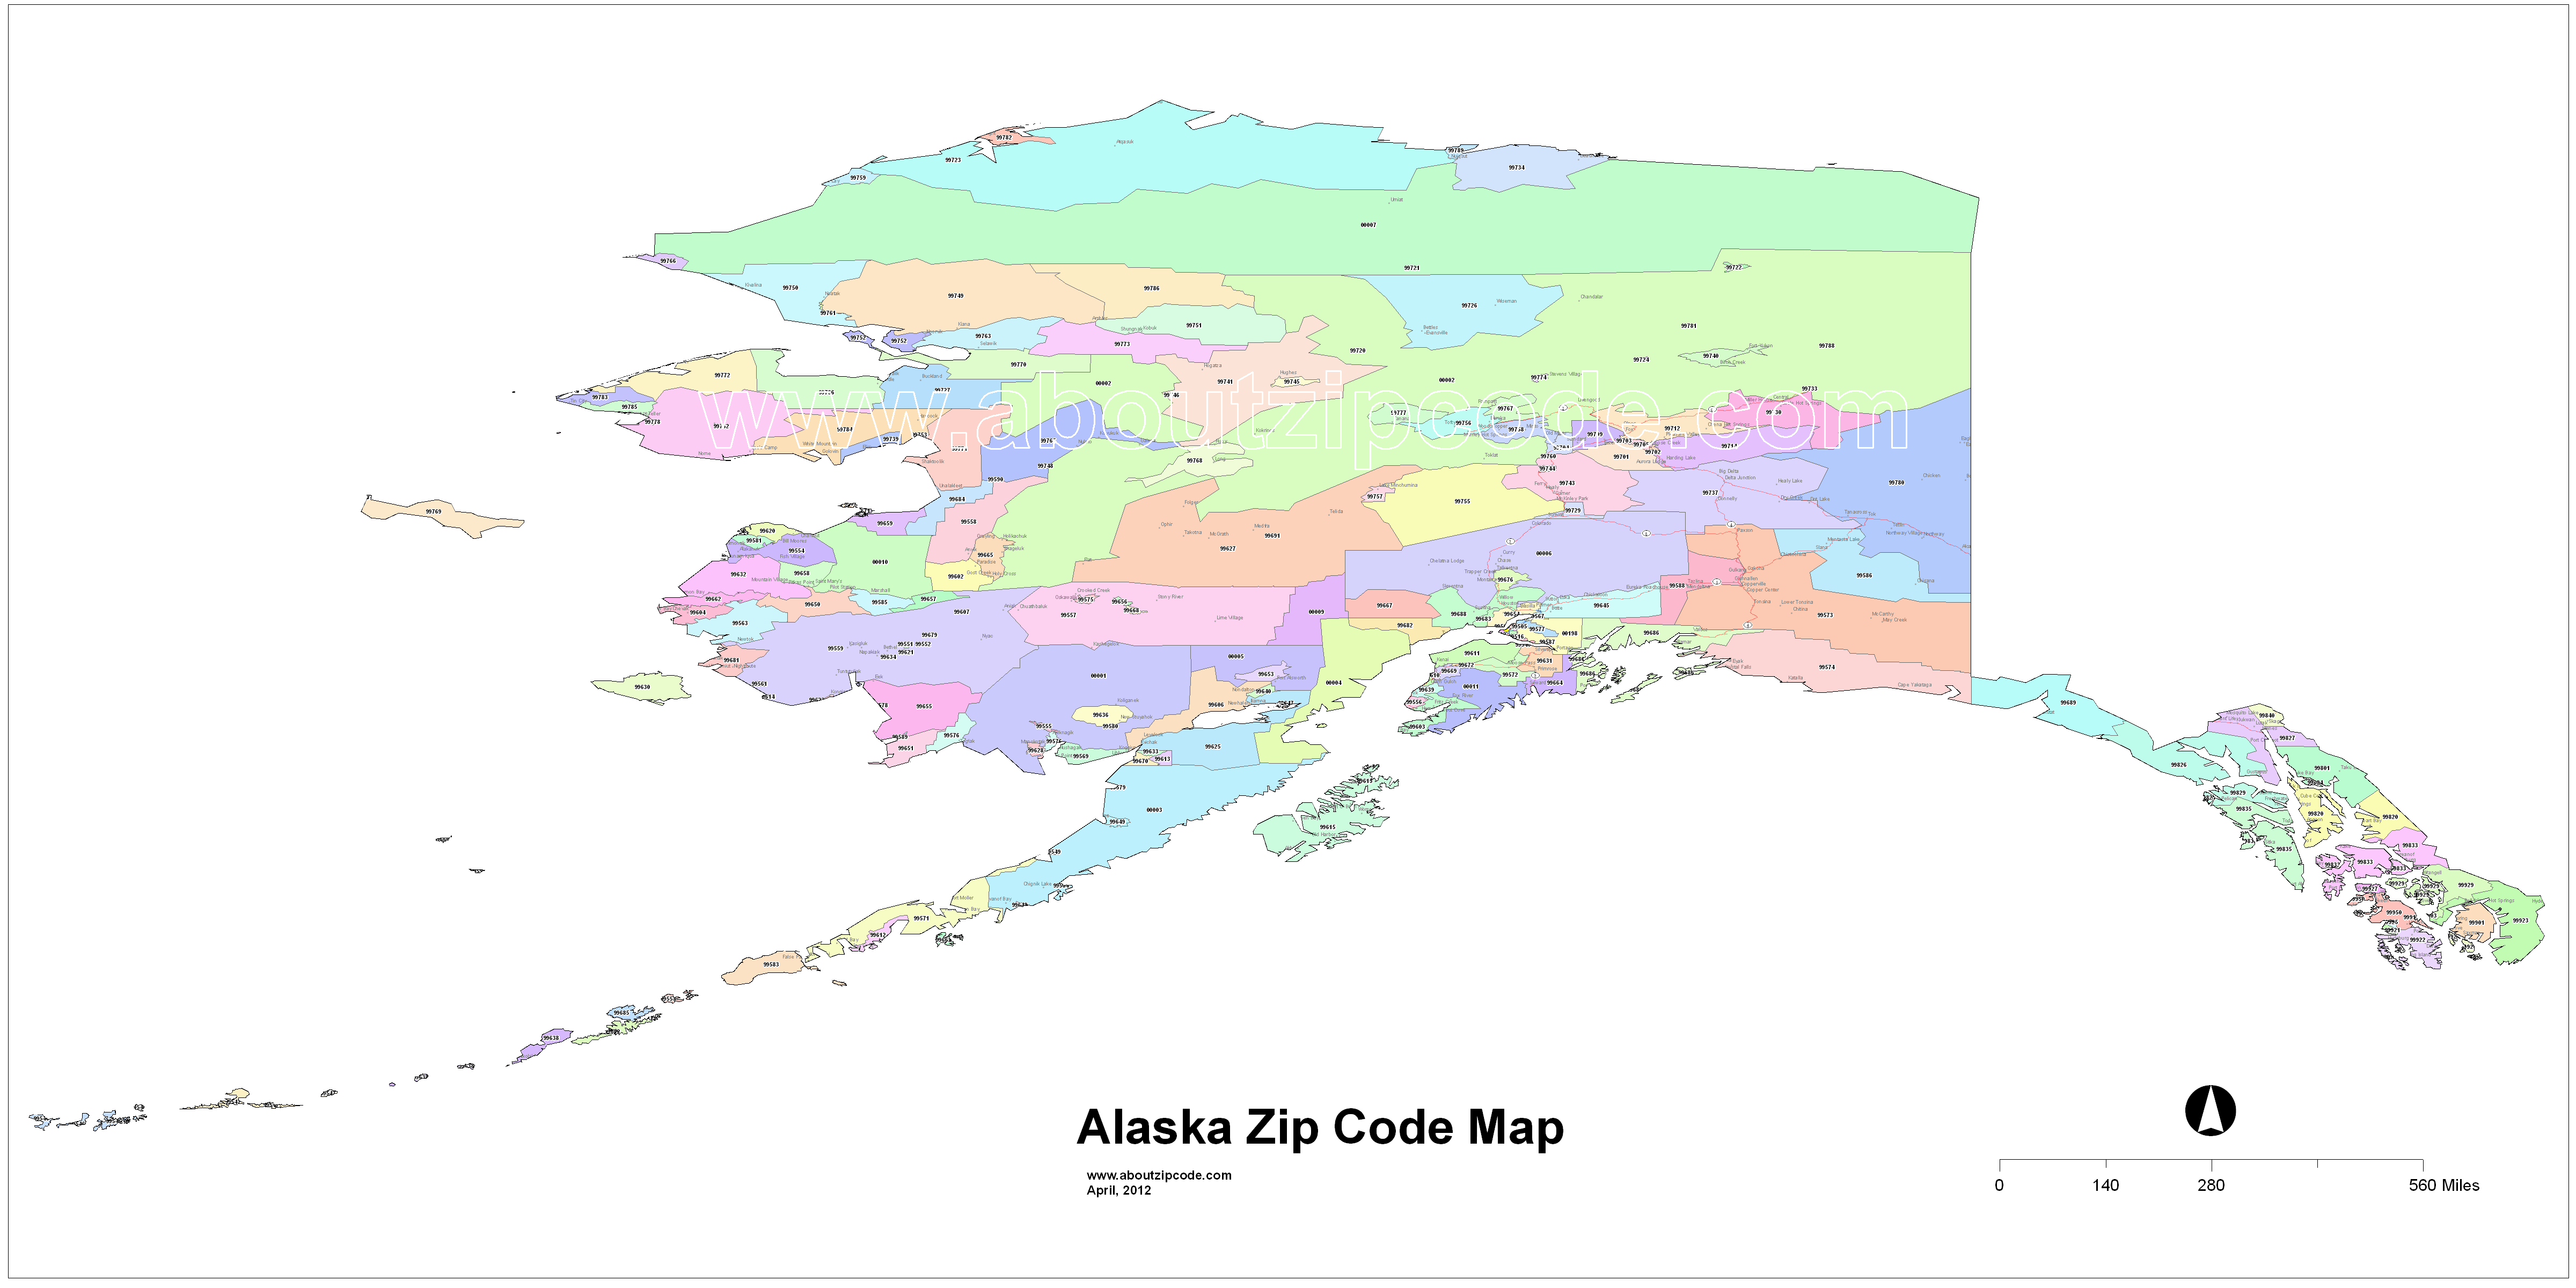 Alaska zip code map